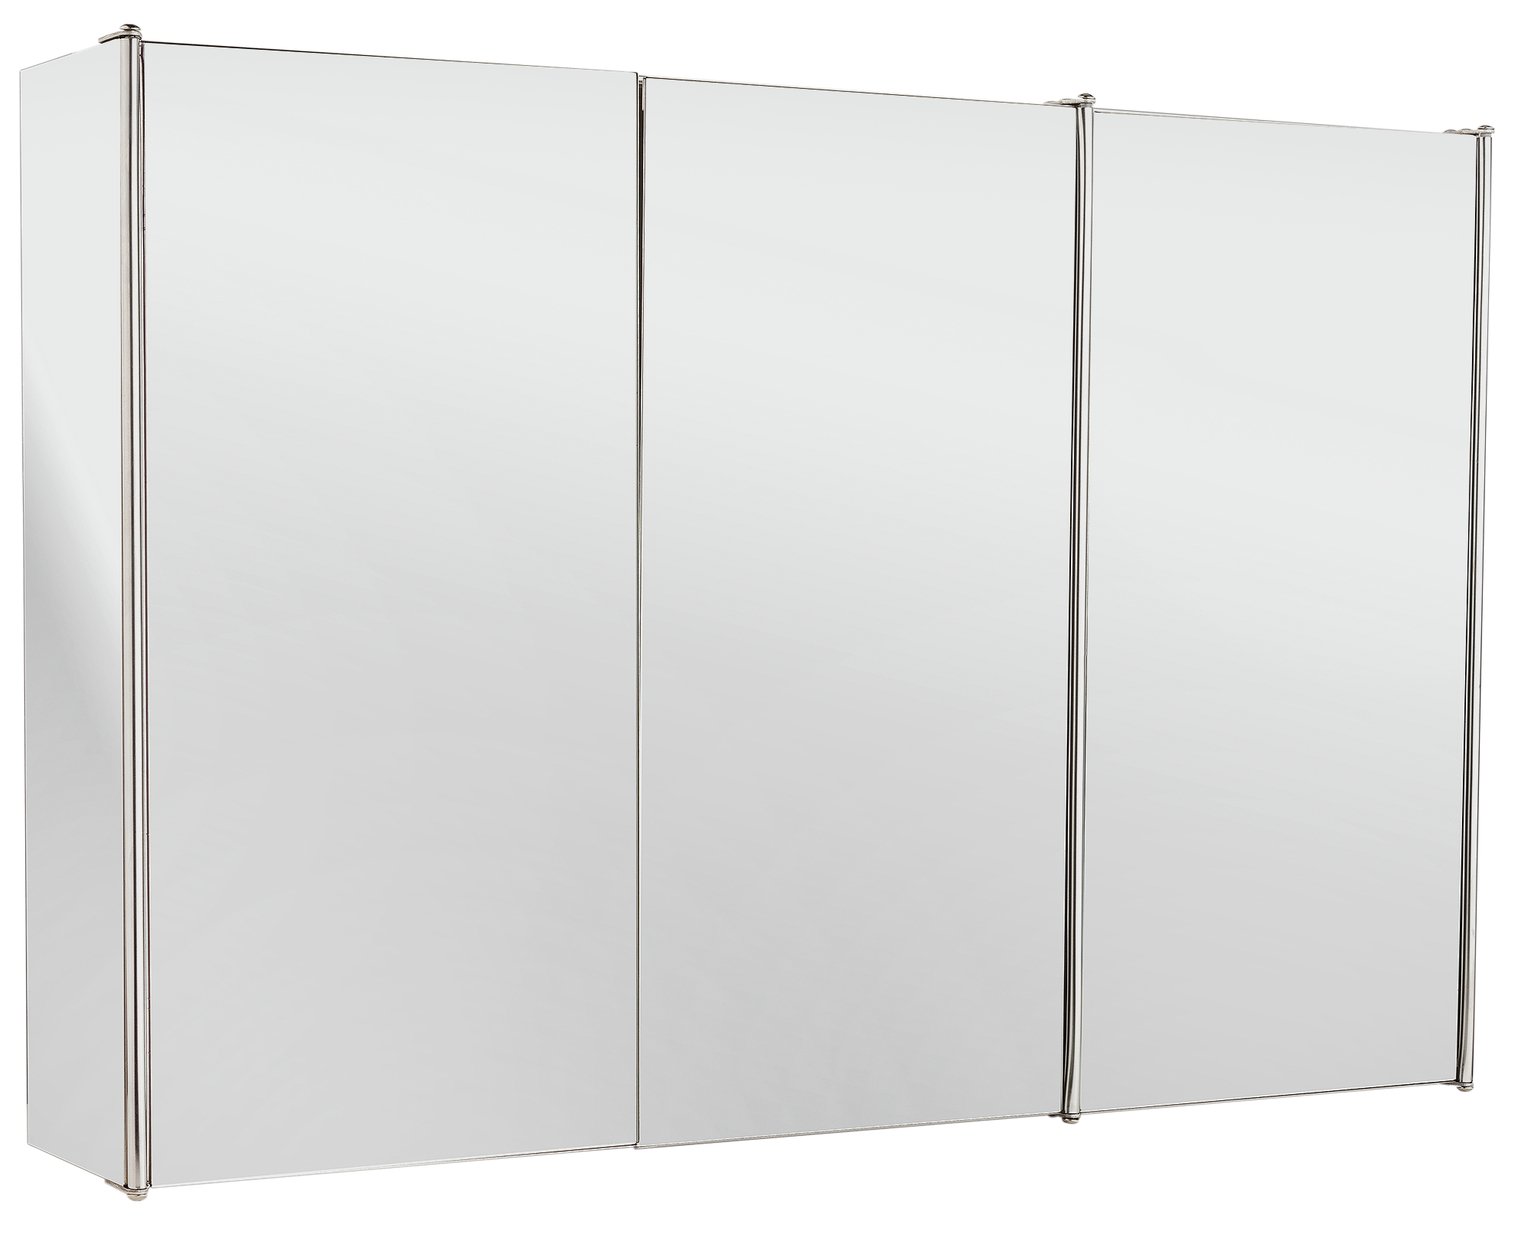 Argos Home Stainless Steel 3 Door Mirrored Cabinet